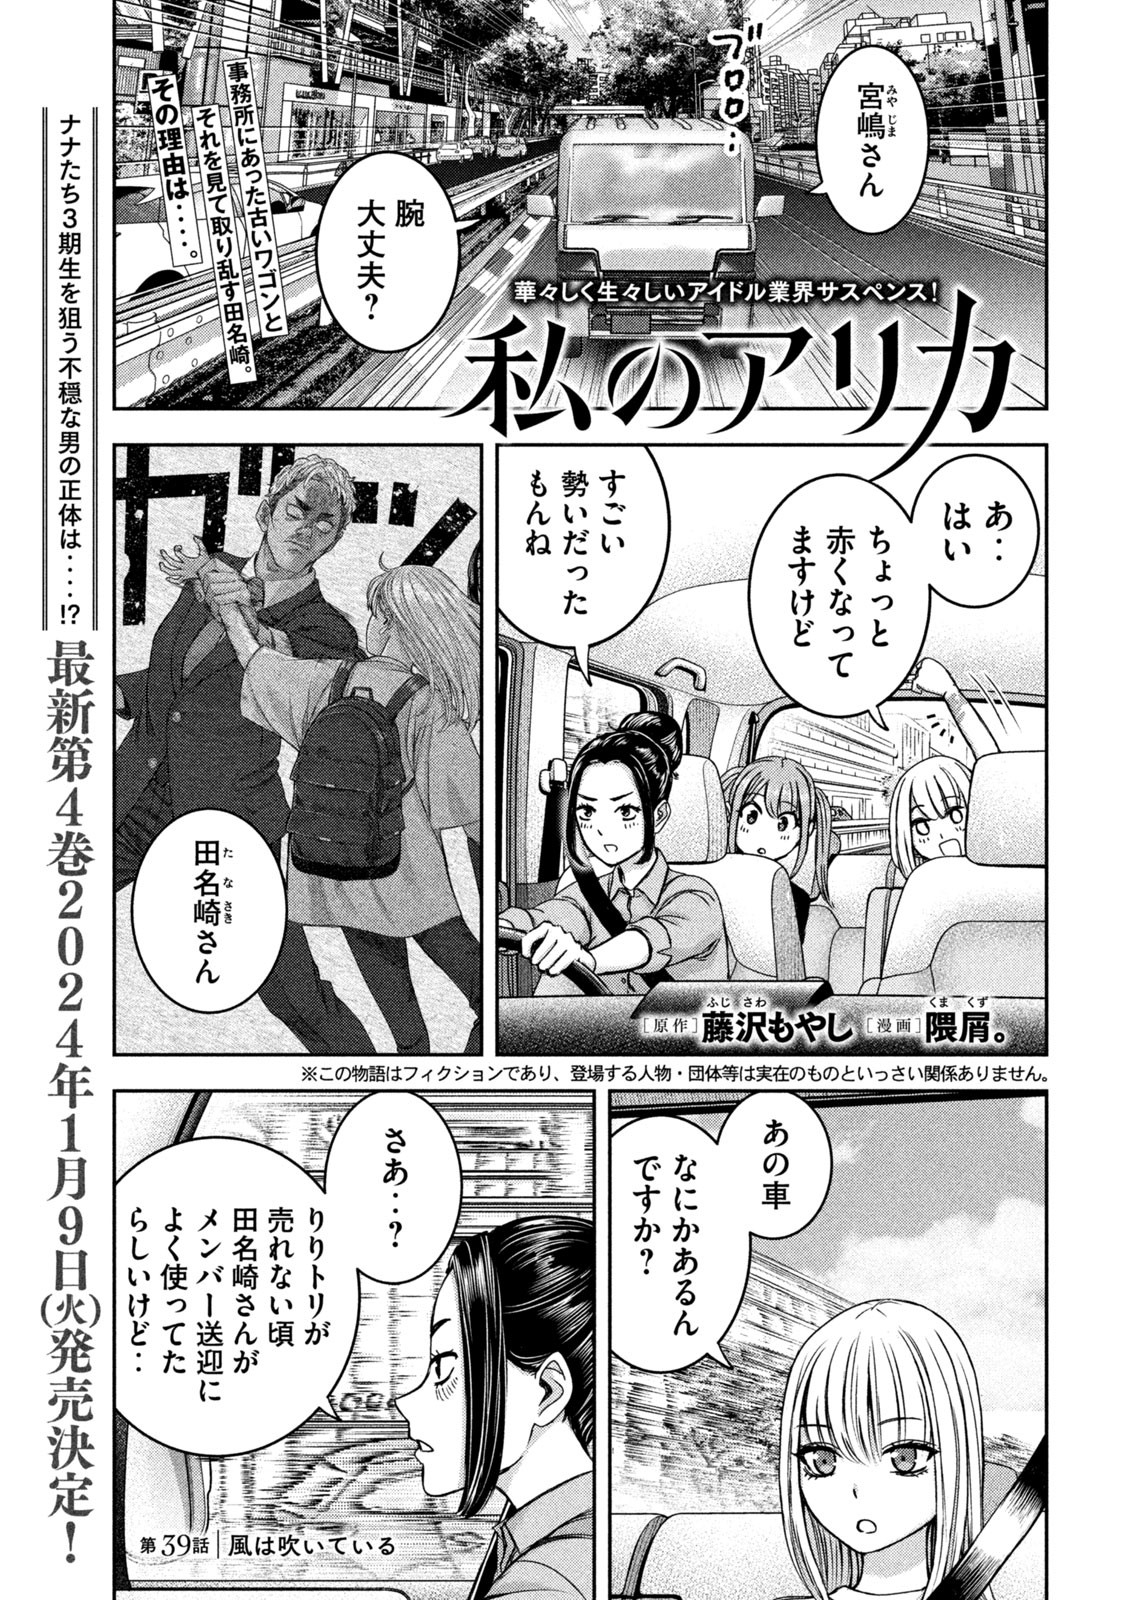 Watashi no Arika - Chapter 39 - Page 1